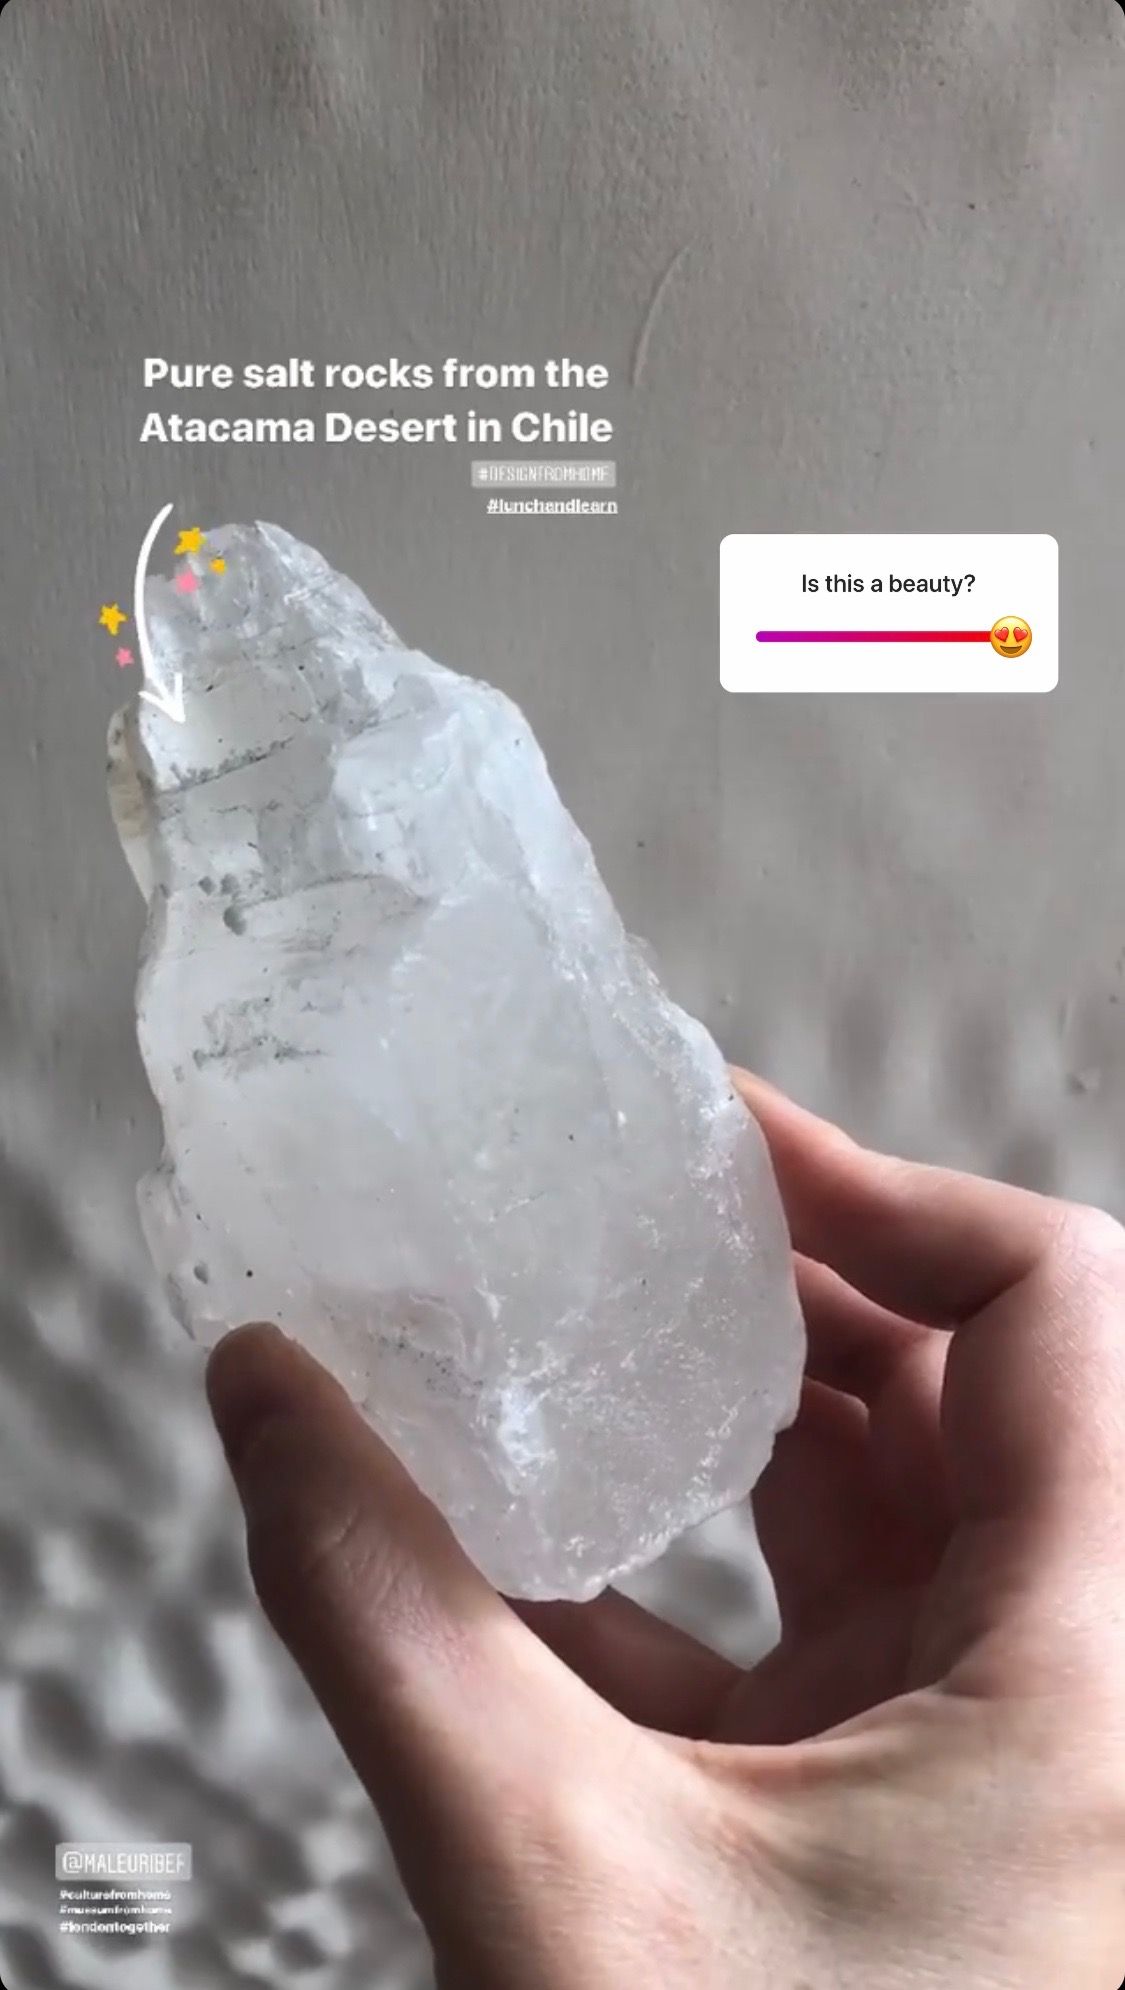 Slider sticker on an Instagram stories post by @designmuseum